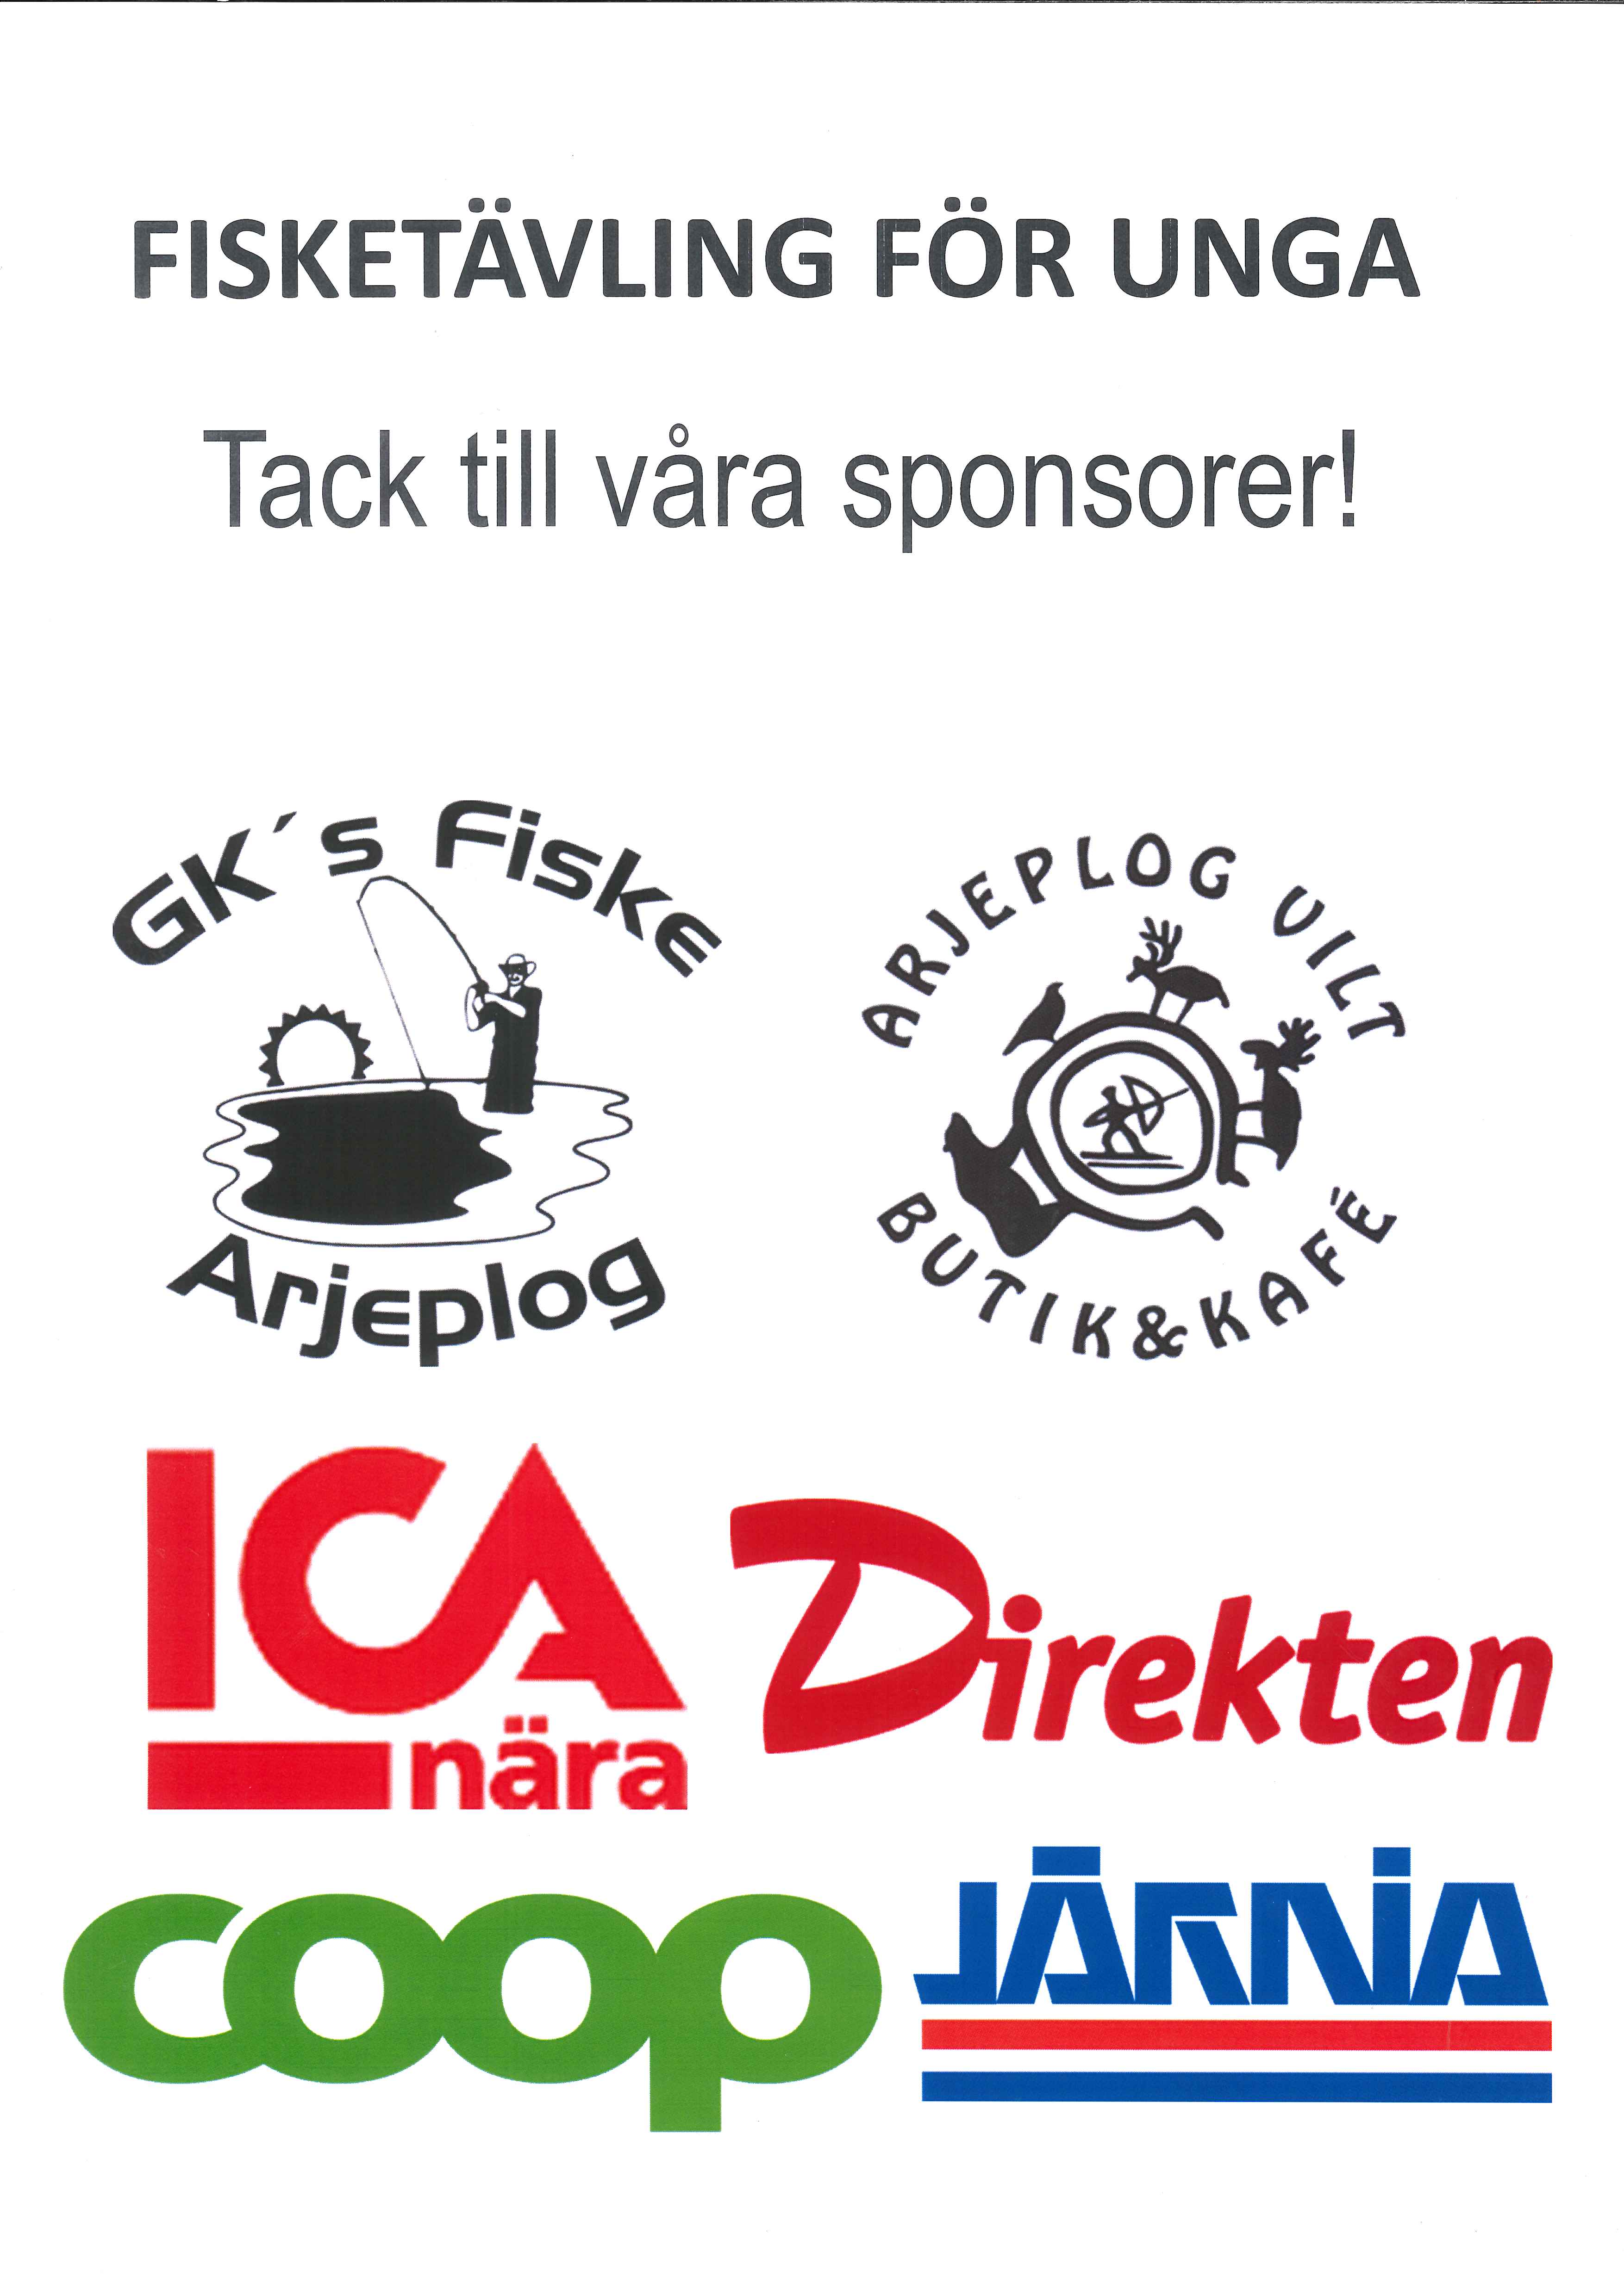 Tack till våra sponsorer GK´s fiske, Arjeplog vilt butik och kafé, ICA nära, COOP, Järnia, Direkten